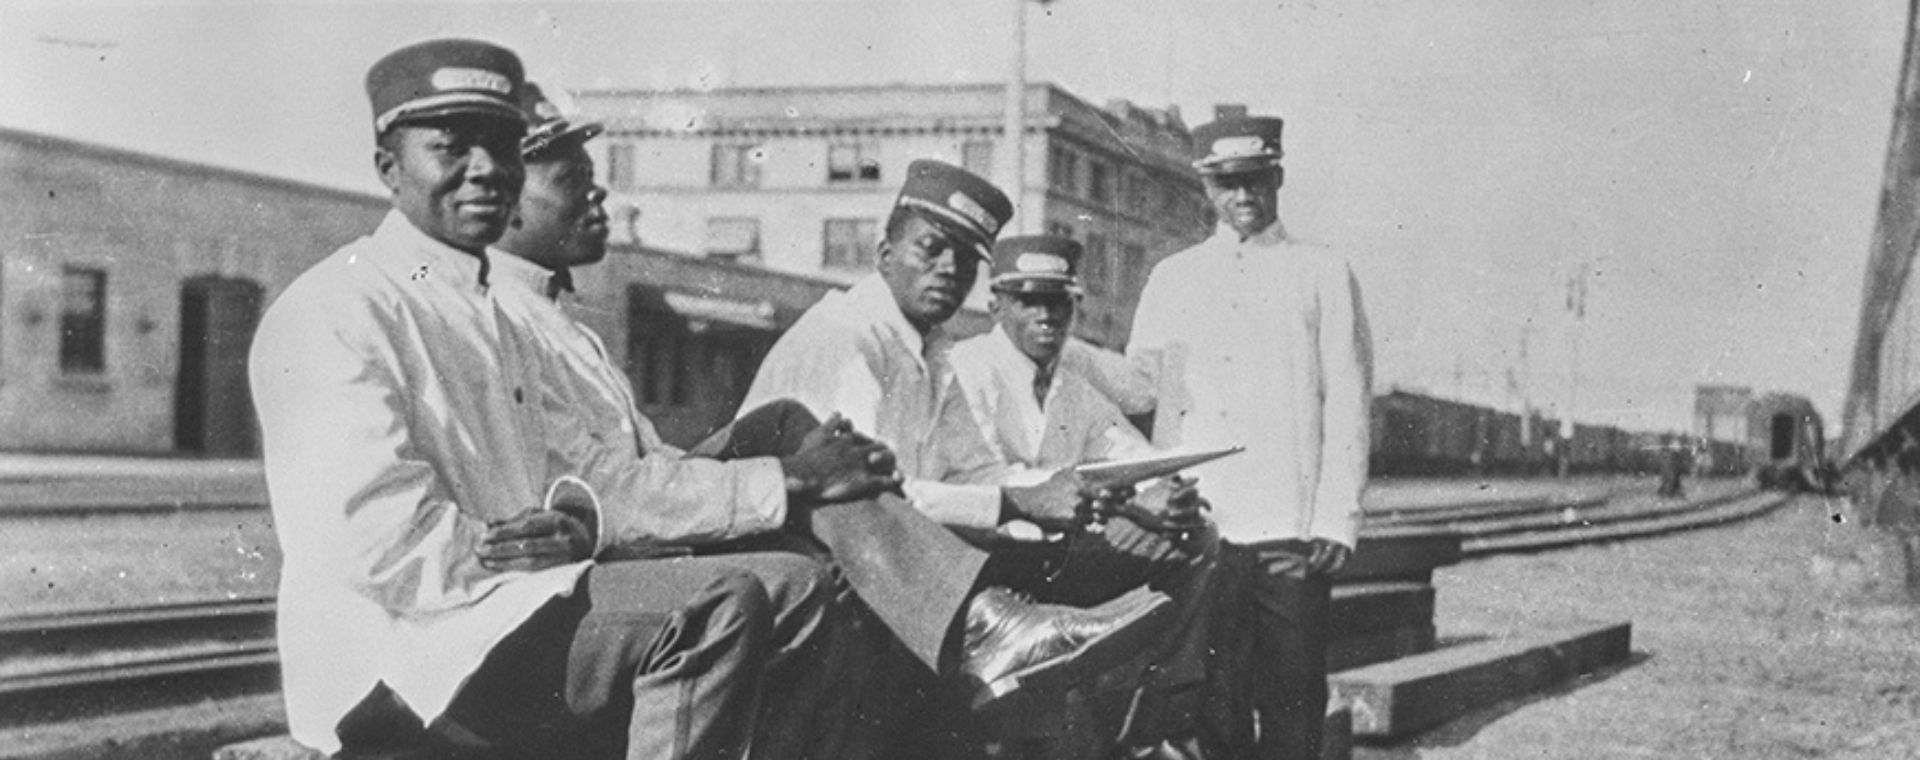 Photographie d’archives en noir et blanc de cinq hommes noirs assis sur une voie ferrée. Ils sont vêtus d’uniformes ferroviaires blancs.